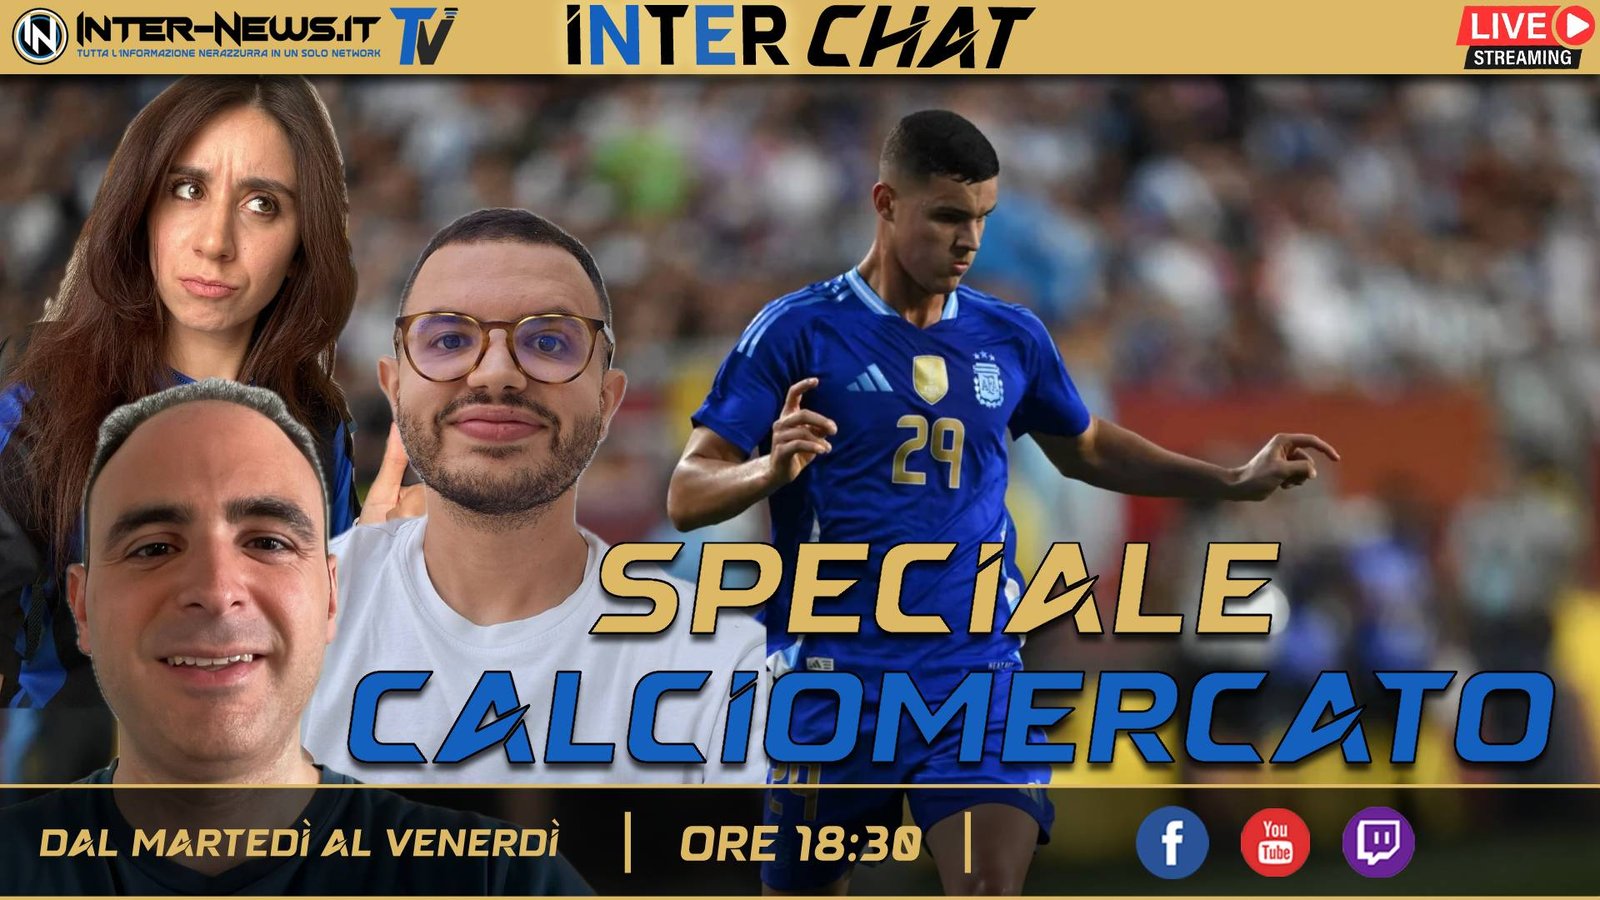 Calciomercato Inter, la dirigenza lavora alle cessioni | Inter Chat LIVE